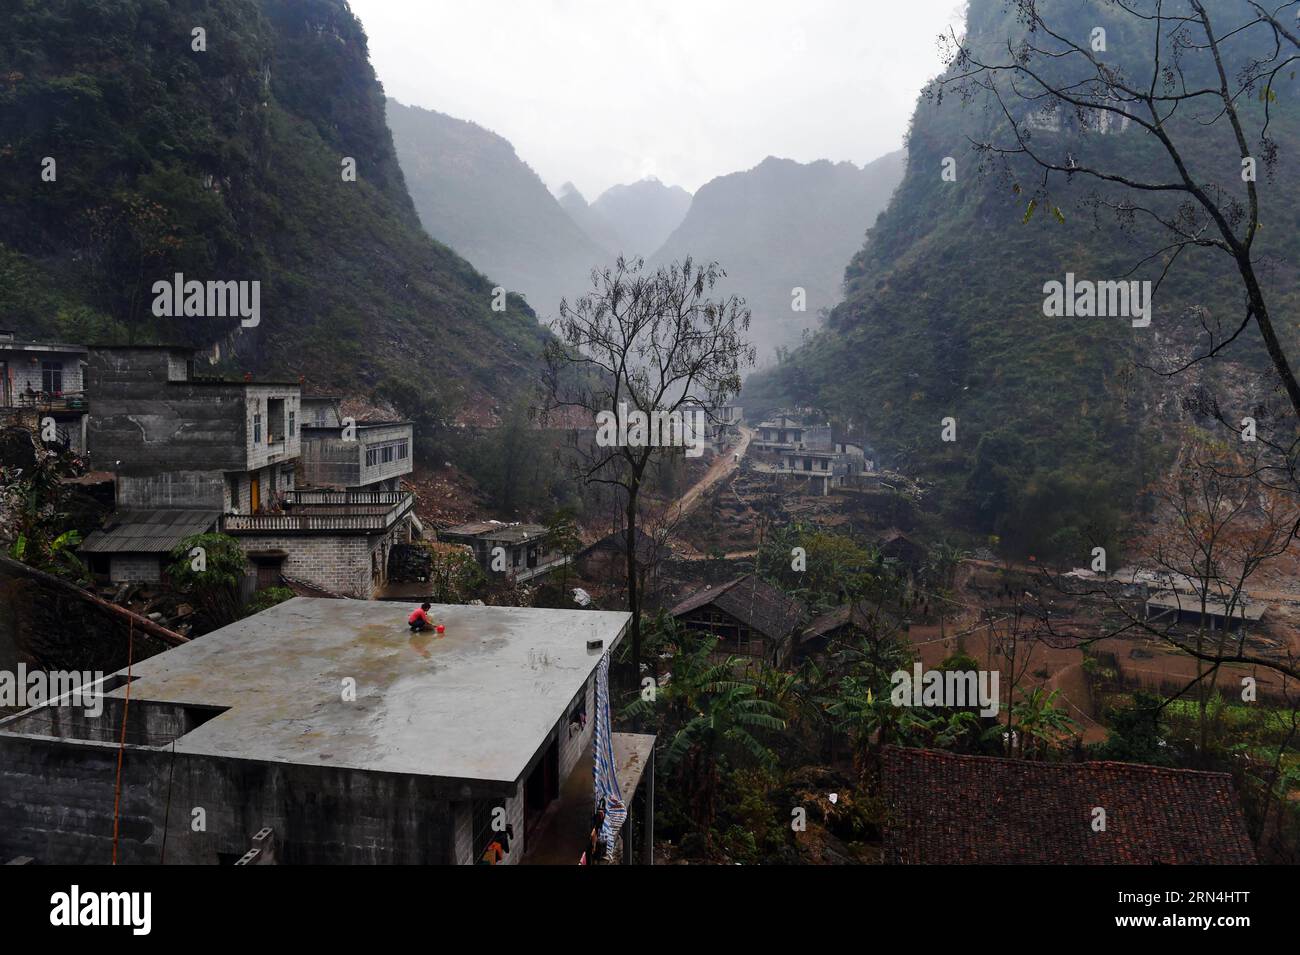 Lan Xiuxiang sammelt Regenwasser auf dem Dach ihres Hauses im Dorf Nongyong der Gemeinde Bansheng im Autonomen Kreis Dahua Yao, südwestchinesische autonome Region Guangxi Zhuang, 12. Februar 2015. Die Bansheng Township liegt im Zentrum der Karst-Landformen im Westen von Guangxi und leidet seit Ewigkeiten unter einem starken Wassermangel. Die Niederschläge sind daher ein Segen für die Menschen, die seit etwa 1.000 Jahren auf diesem Land leben und hauptsächlich der ethnischen Gruppe der Yao angehören. Um ihren täglichen Lebensbedürfnissen gerecht zu werden, sammeln die Einheimischen immer Regenwasser mit Eimern und Fässern jeder Größe sowie mit Dächern ihrer Häuser. In t Stockfoto